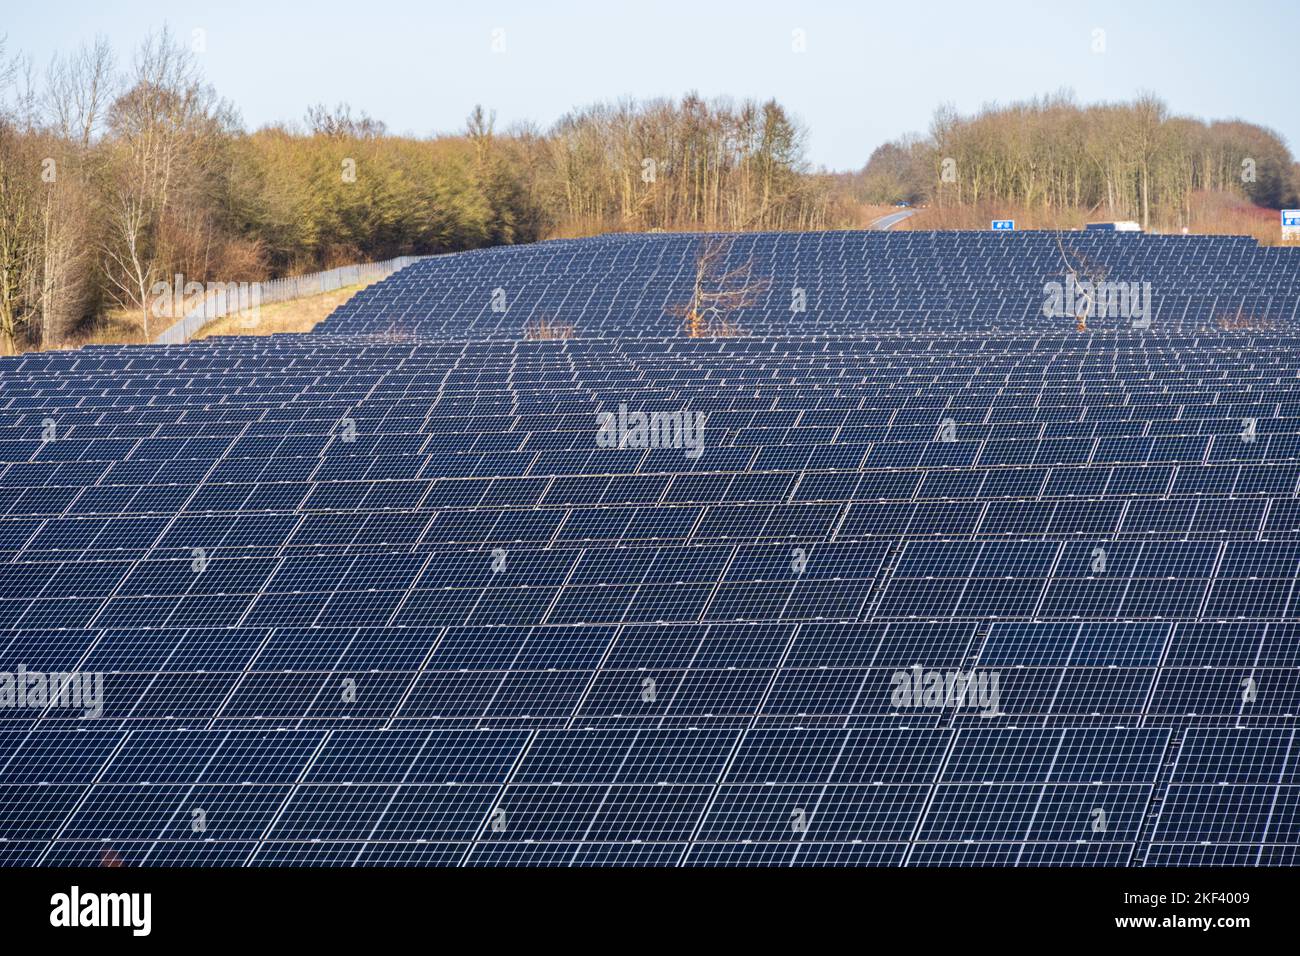 Photovoltaikanlage zur Stromerzeugung am Rande einer Autobahn Stock Photo